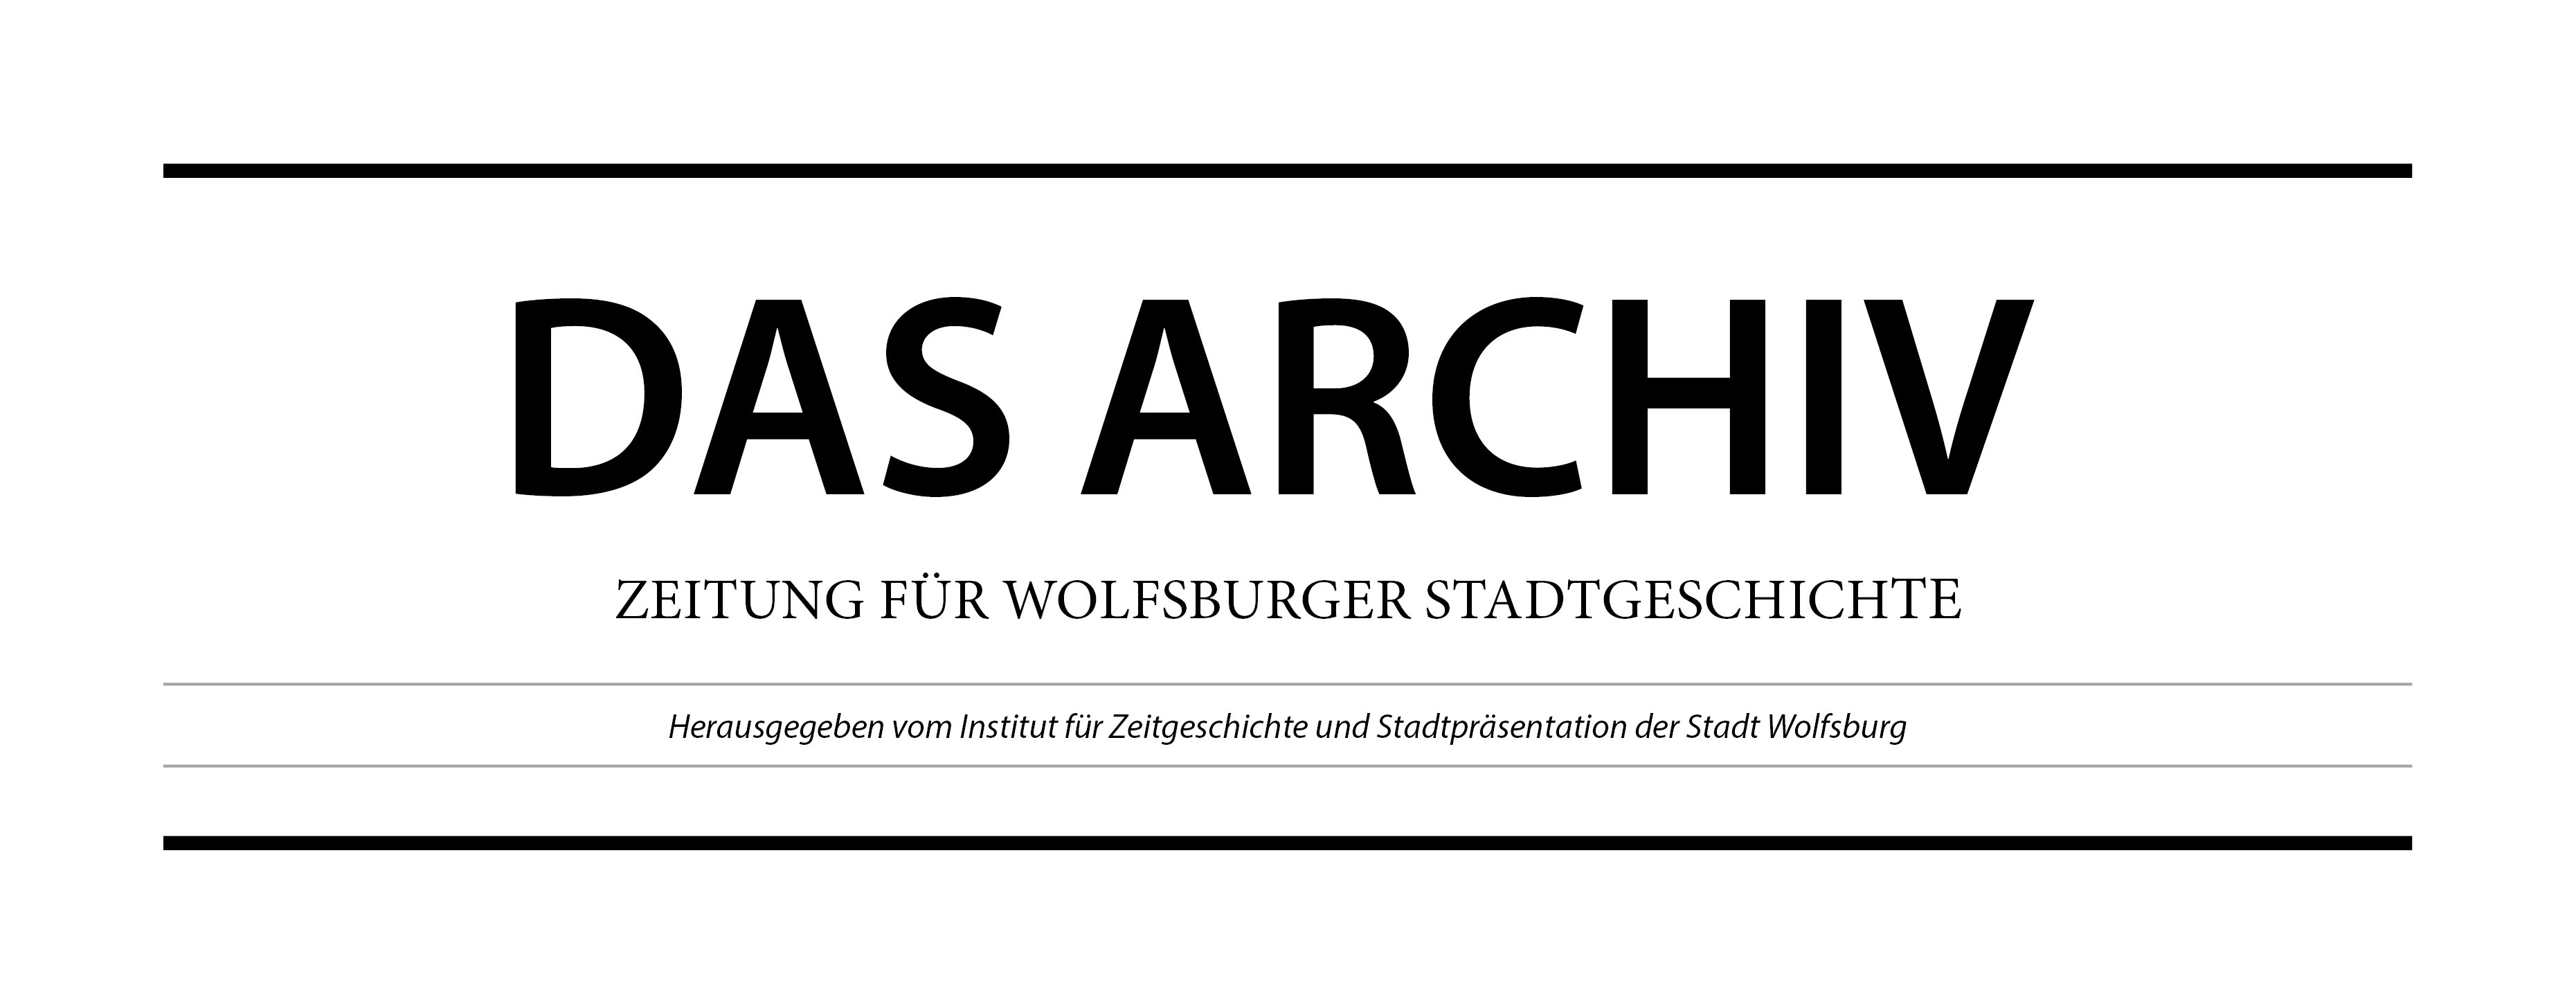 Titel des Magazins mit der Aufschrift: DAS ARCHIV - Zeitung für Wolfsburger Stadtgeschichte - Herausgegeben vom Institut für Zeitgeschichte und Stadtpräsentation der Stadt Wolfsburg